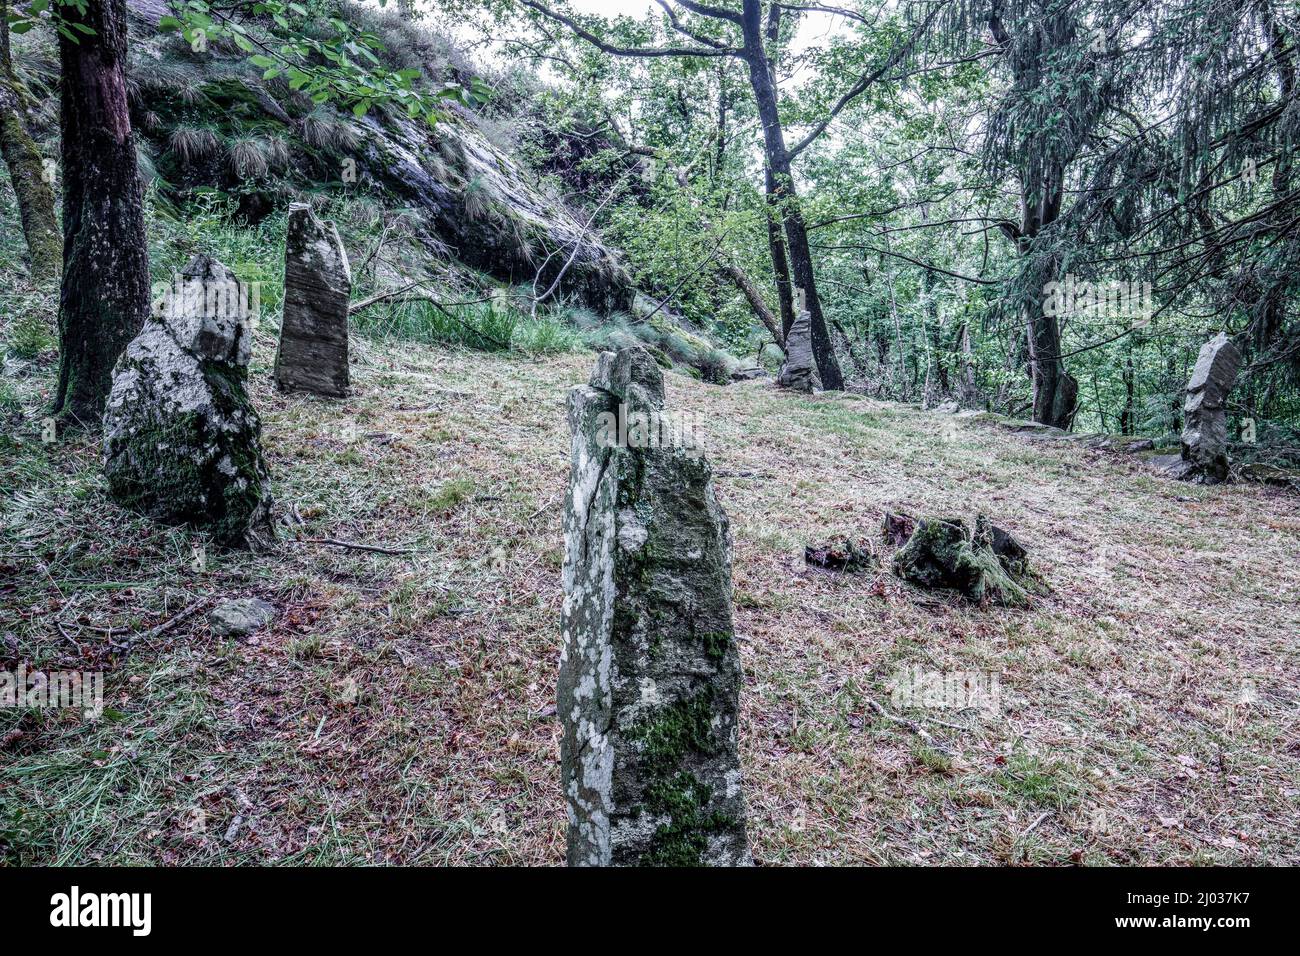 Trouvailles mégalithiques dans le hameau de Castelluccio, Montecrestese, Val d'Ossola, V.C.O. (Verbano-Cusio-Ossola), Piémont, Italie, Europe Banque D'Images